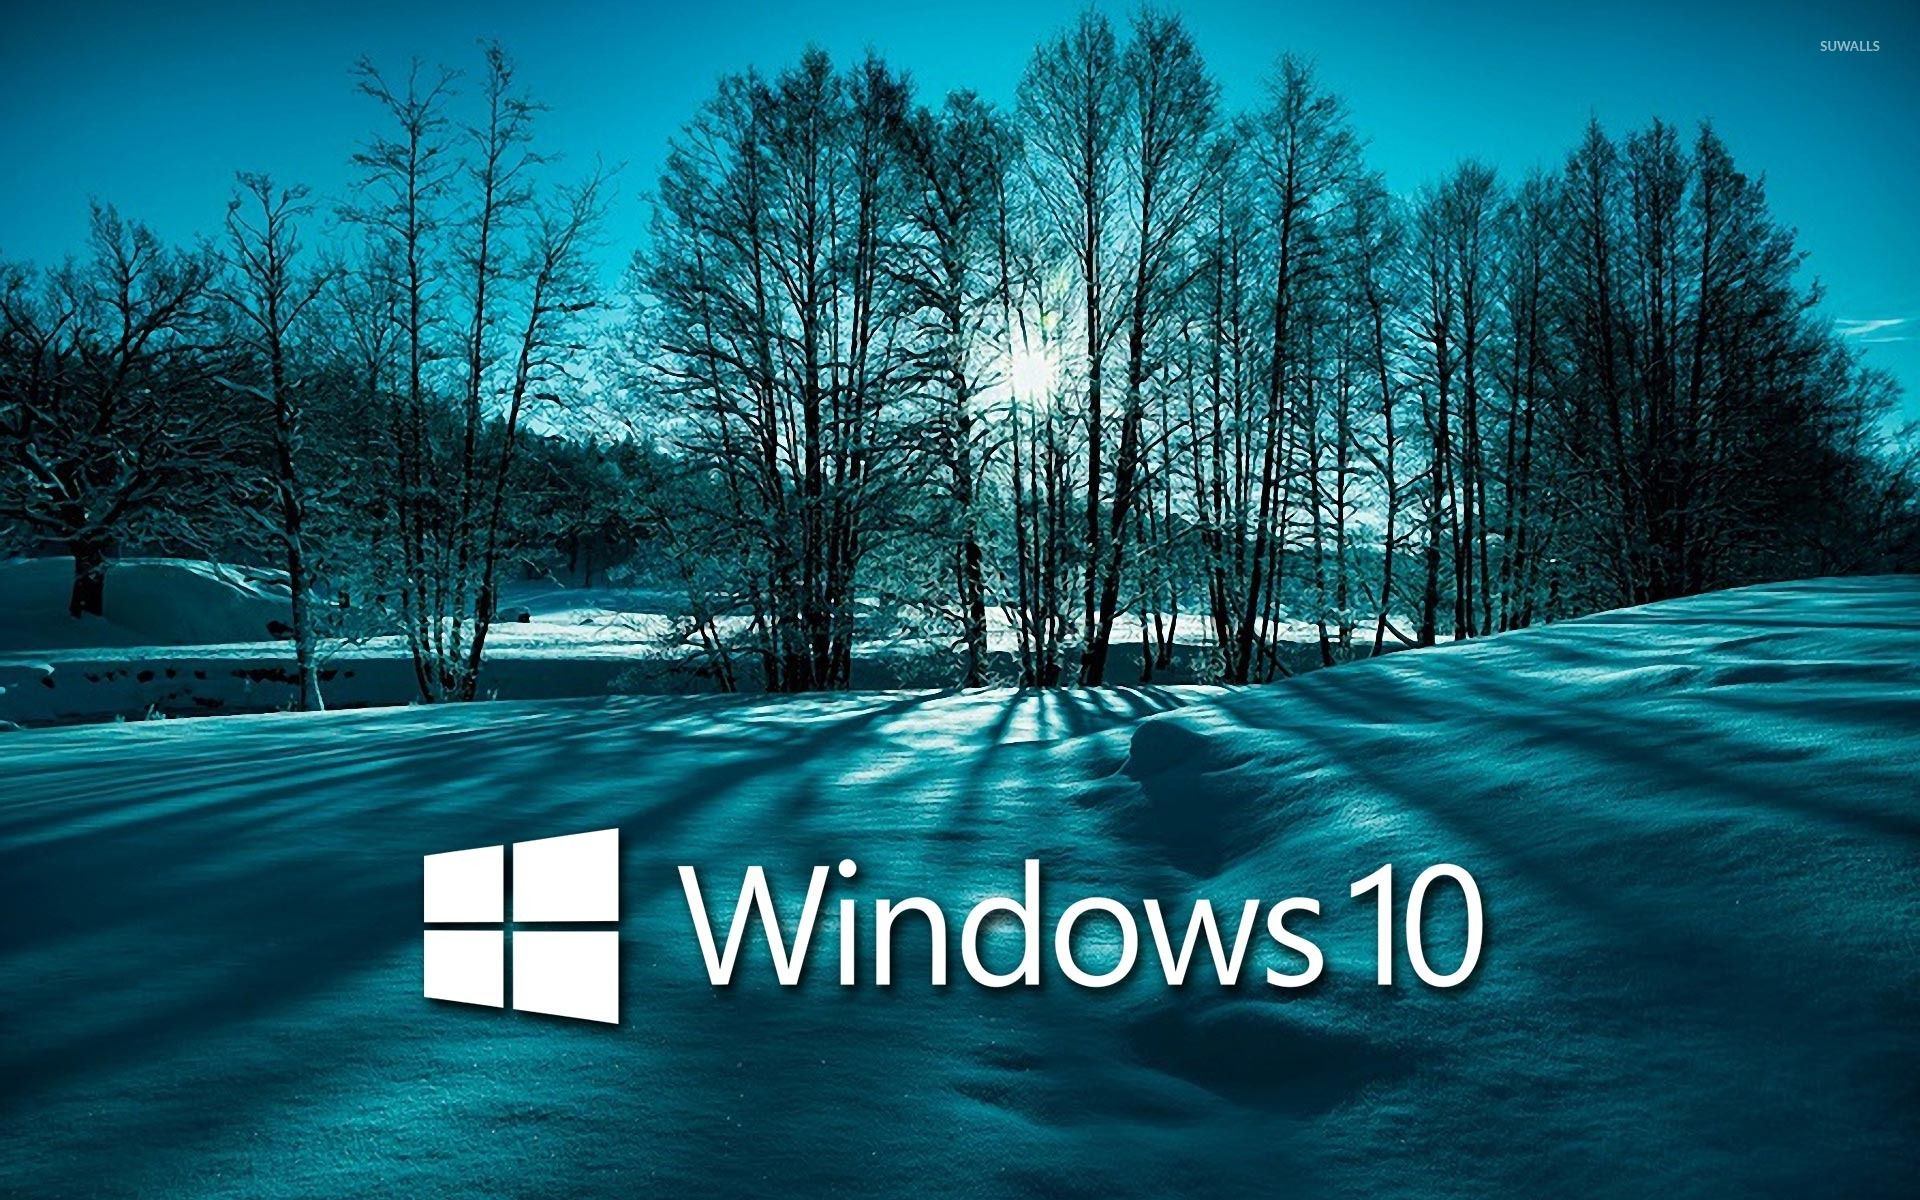 Miễn phí, độc đáo và đẹp mắt, ảnh nền đẹp Windows 10 sẽ làm hài lòng tất cả mọi người. Bạn sẽ được trải nghiệm những wallpaper độc đáo, sáng tạo và để lại ấn tượng khó quên với những hình ảnh tuyệt đẹp. Hãy cùng khám phá và tận hưởng ngay hôm nay!